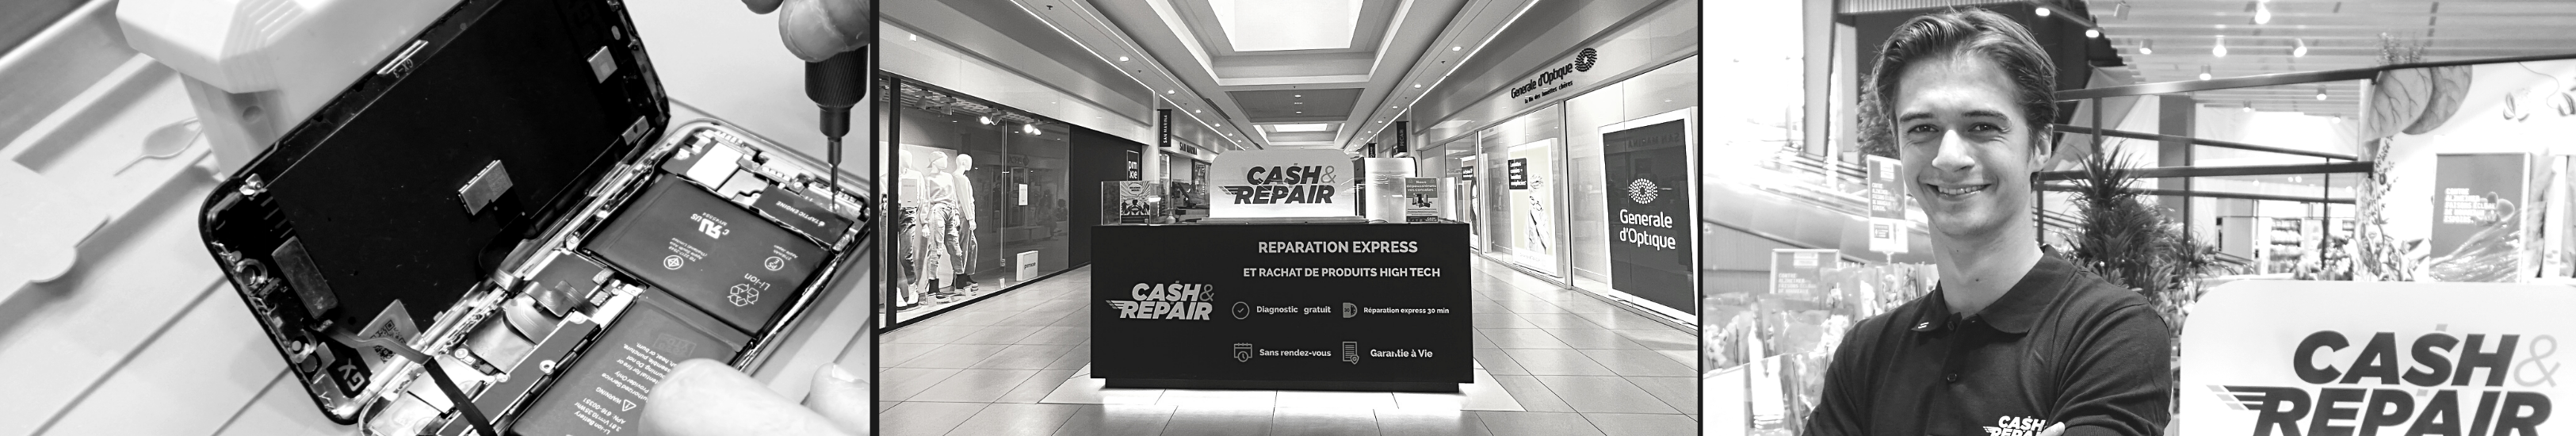 - Atelier de réparation Cash and Repair Alençon